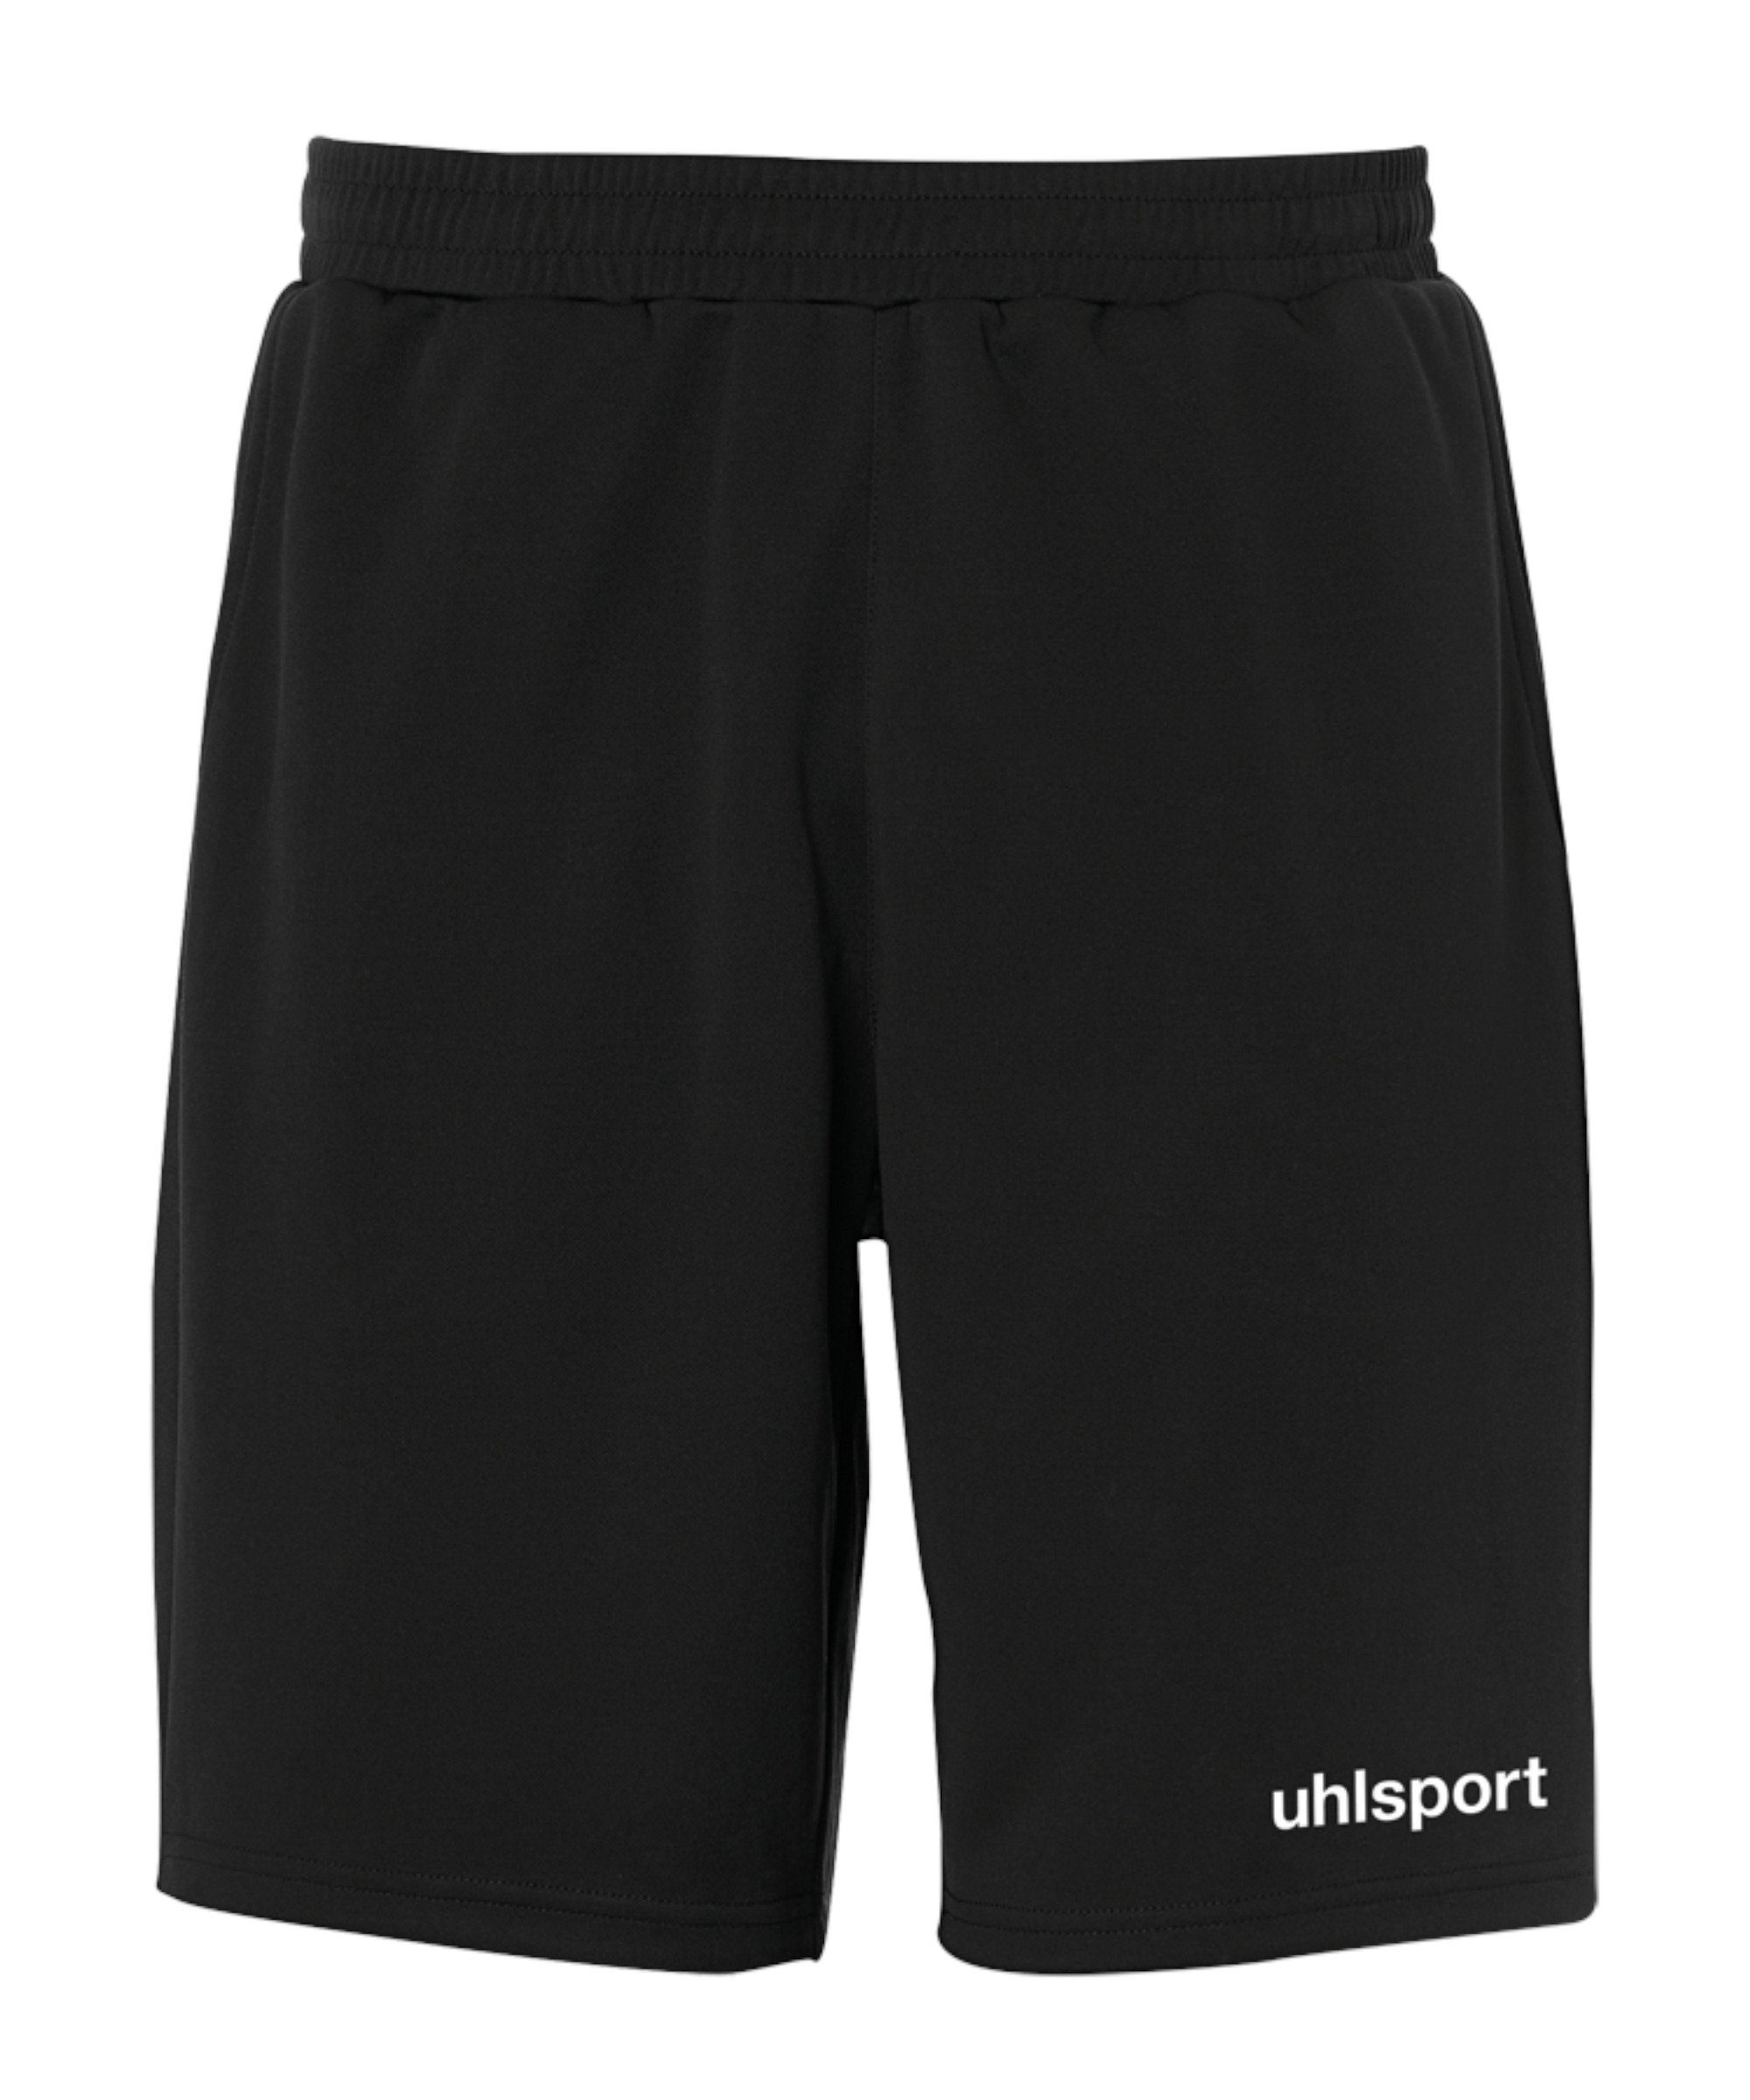 uhlsport Sporthose Essential PES-Short schwarz